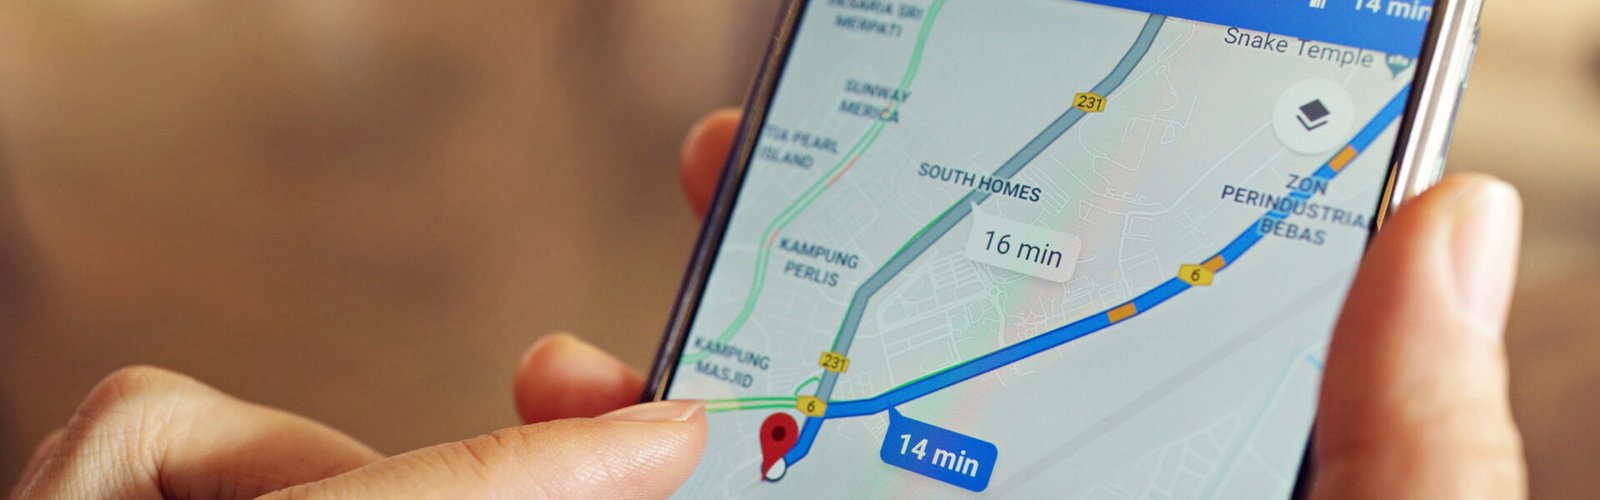 Inteligência Artificial no Google Maps promete mais imersão e conteúdo 3D